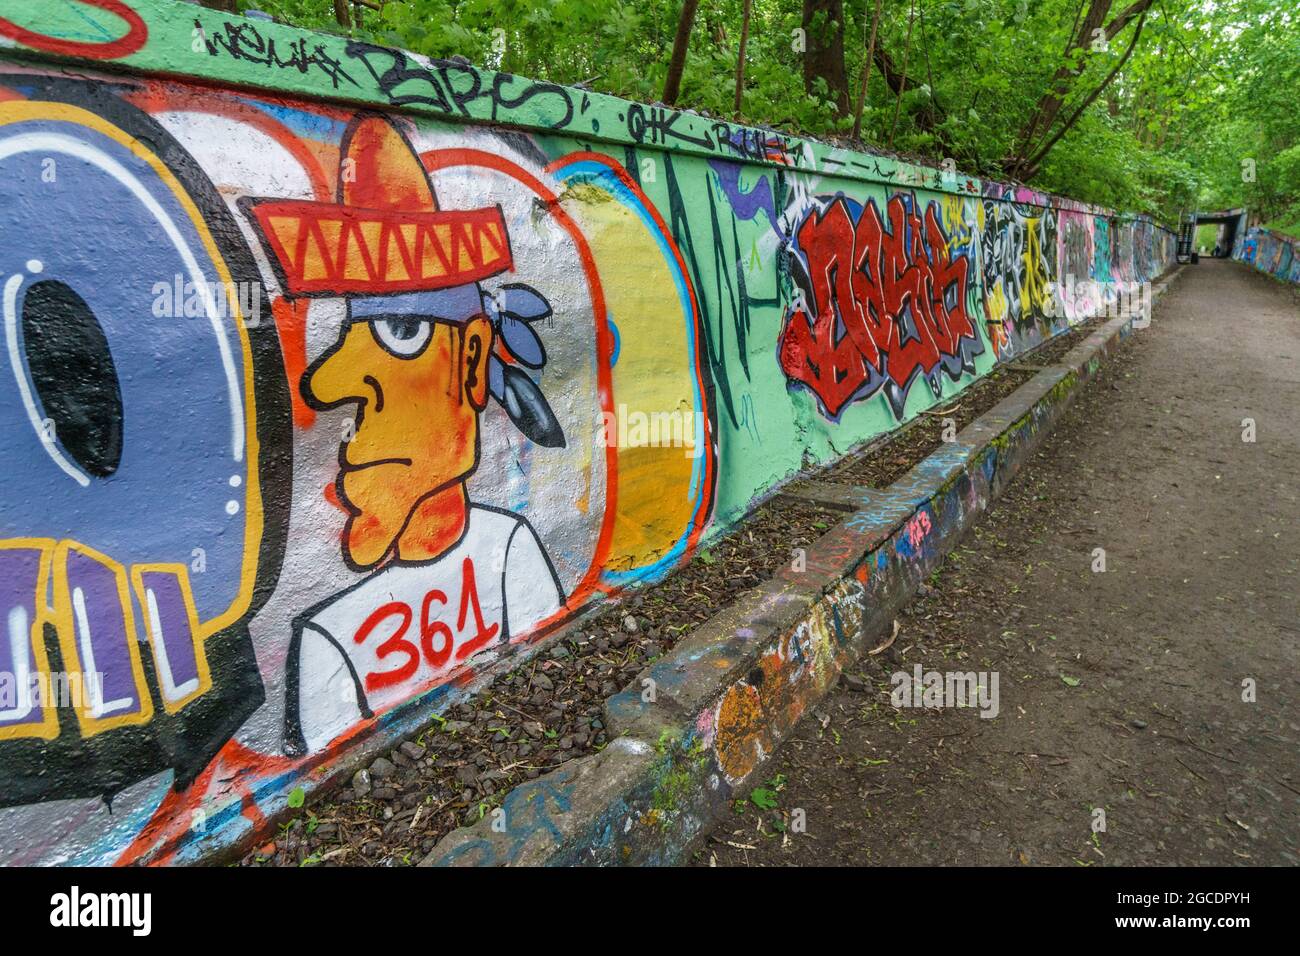 Natur-Park Schoeneberger Suedgelaende , Graffiti, Berlin, Deutschland Stock Photo